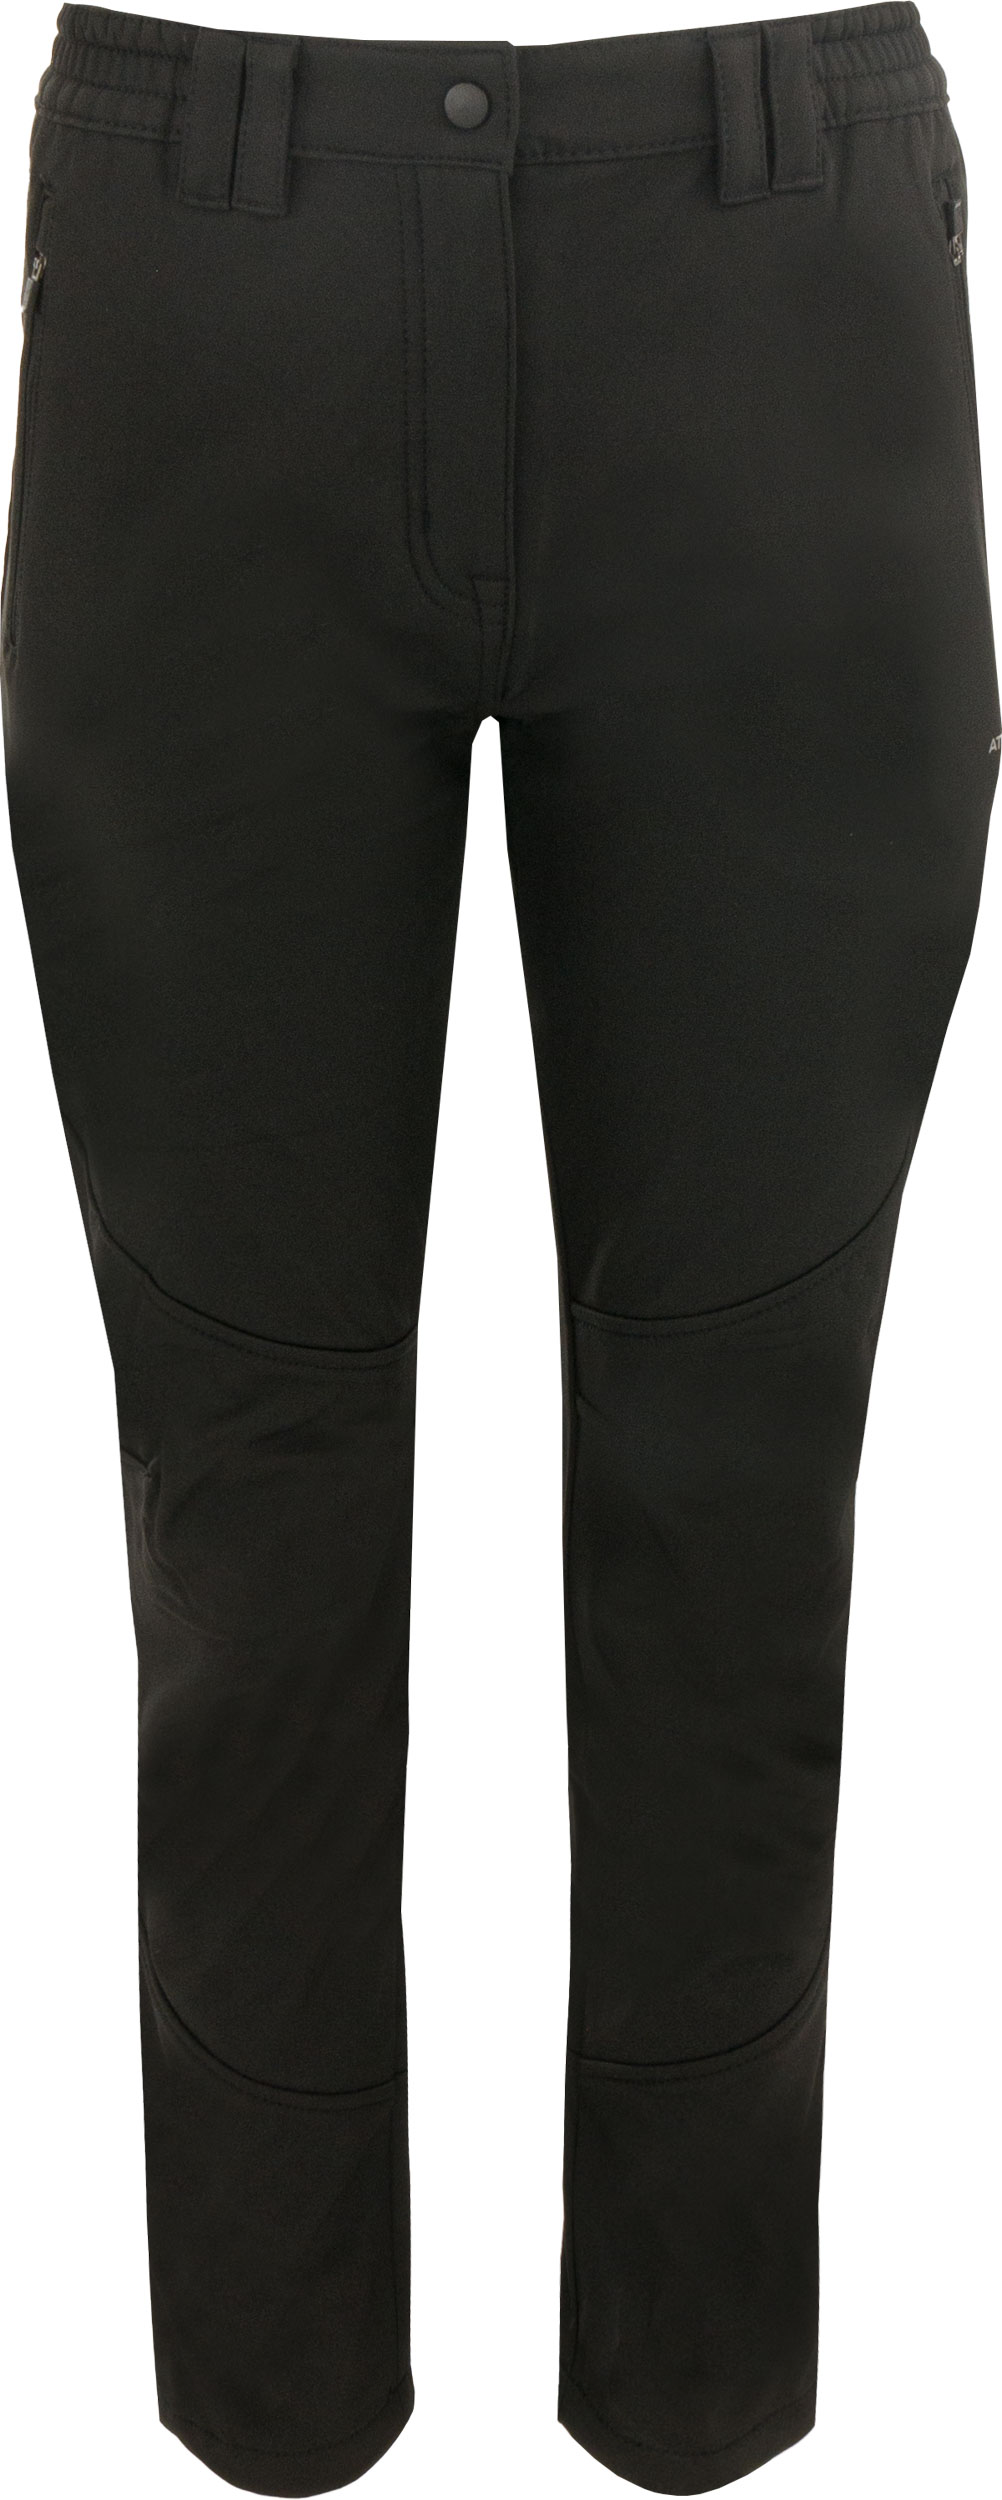 Dámské softshellové kalhoty Athl. DPT MIURA Black|42